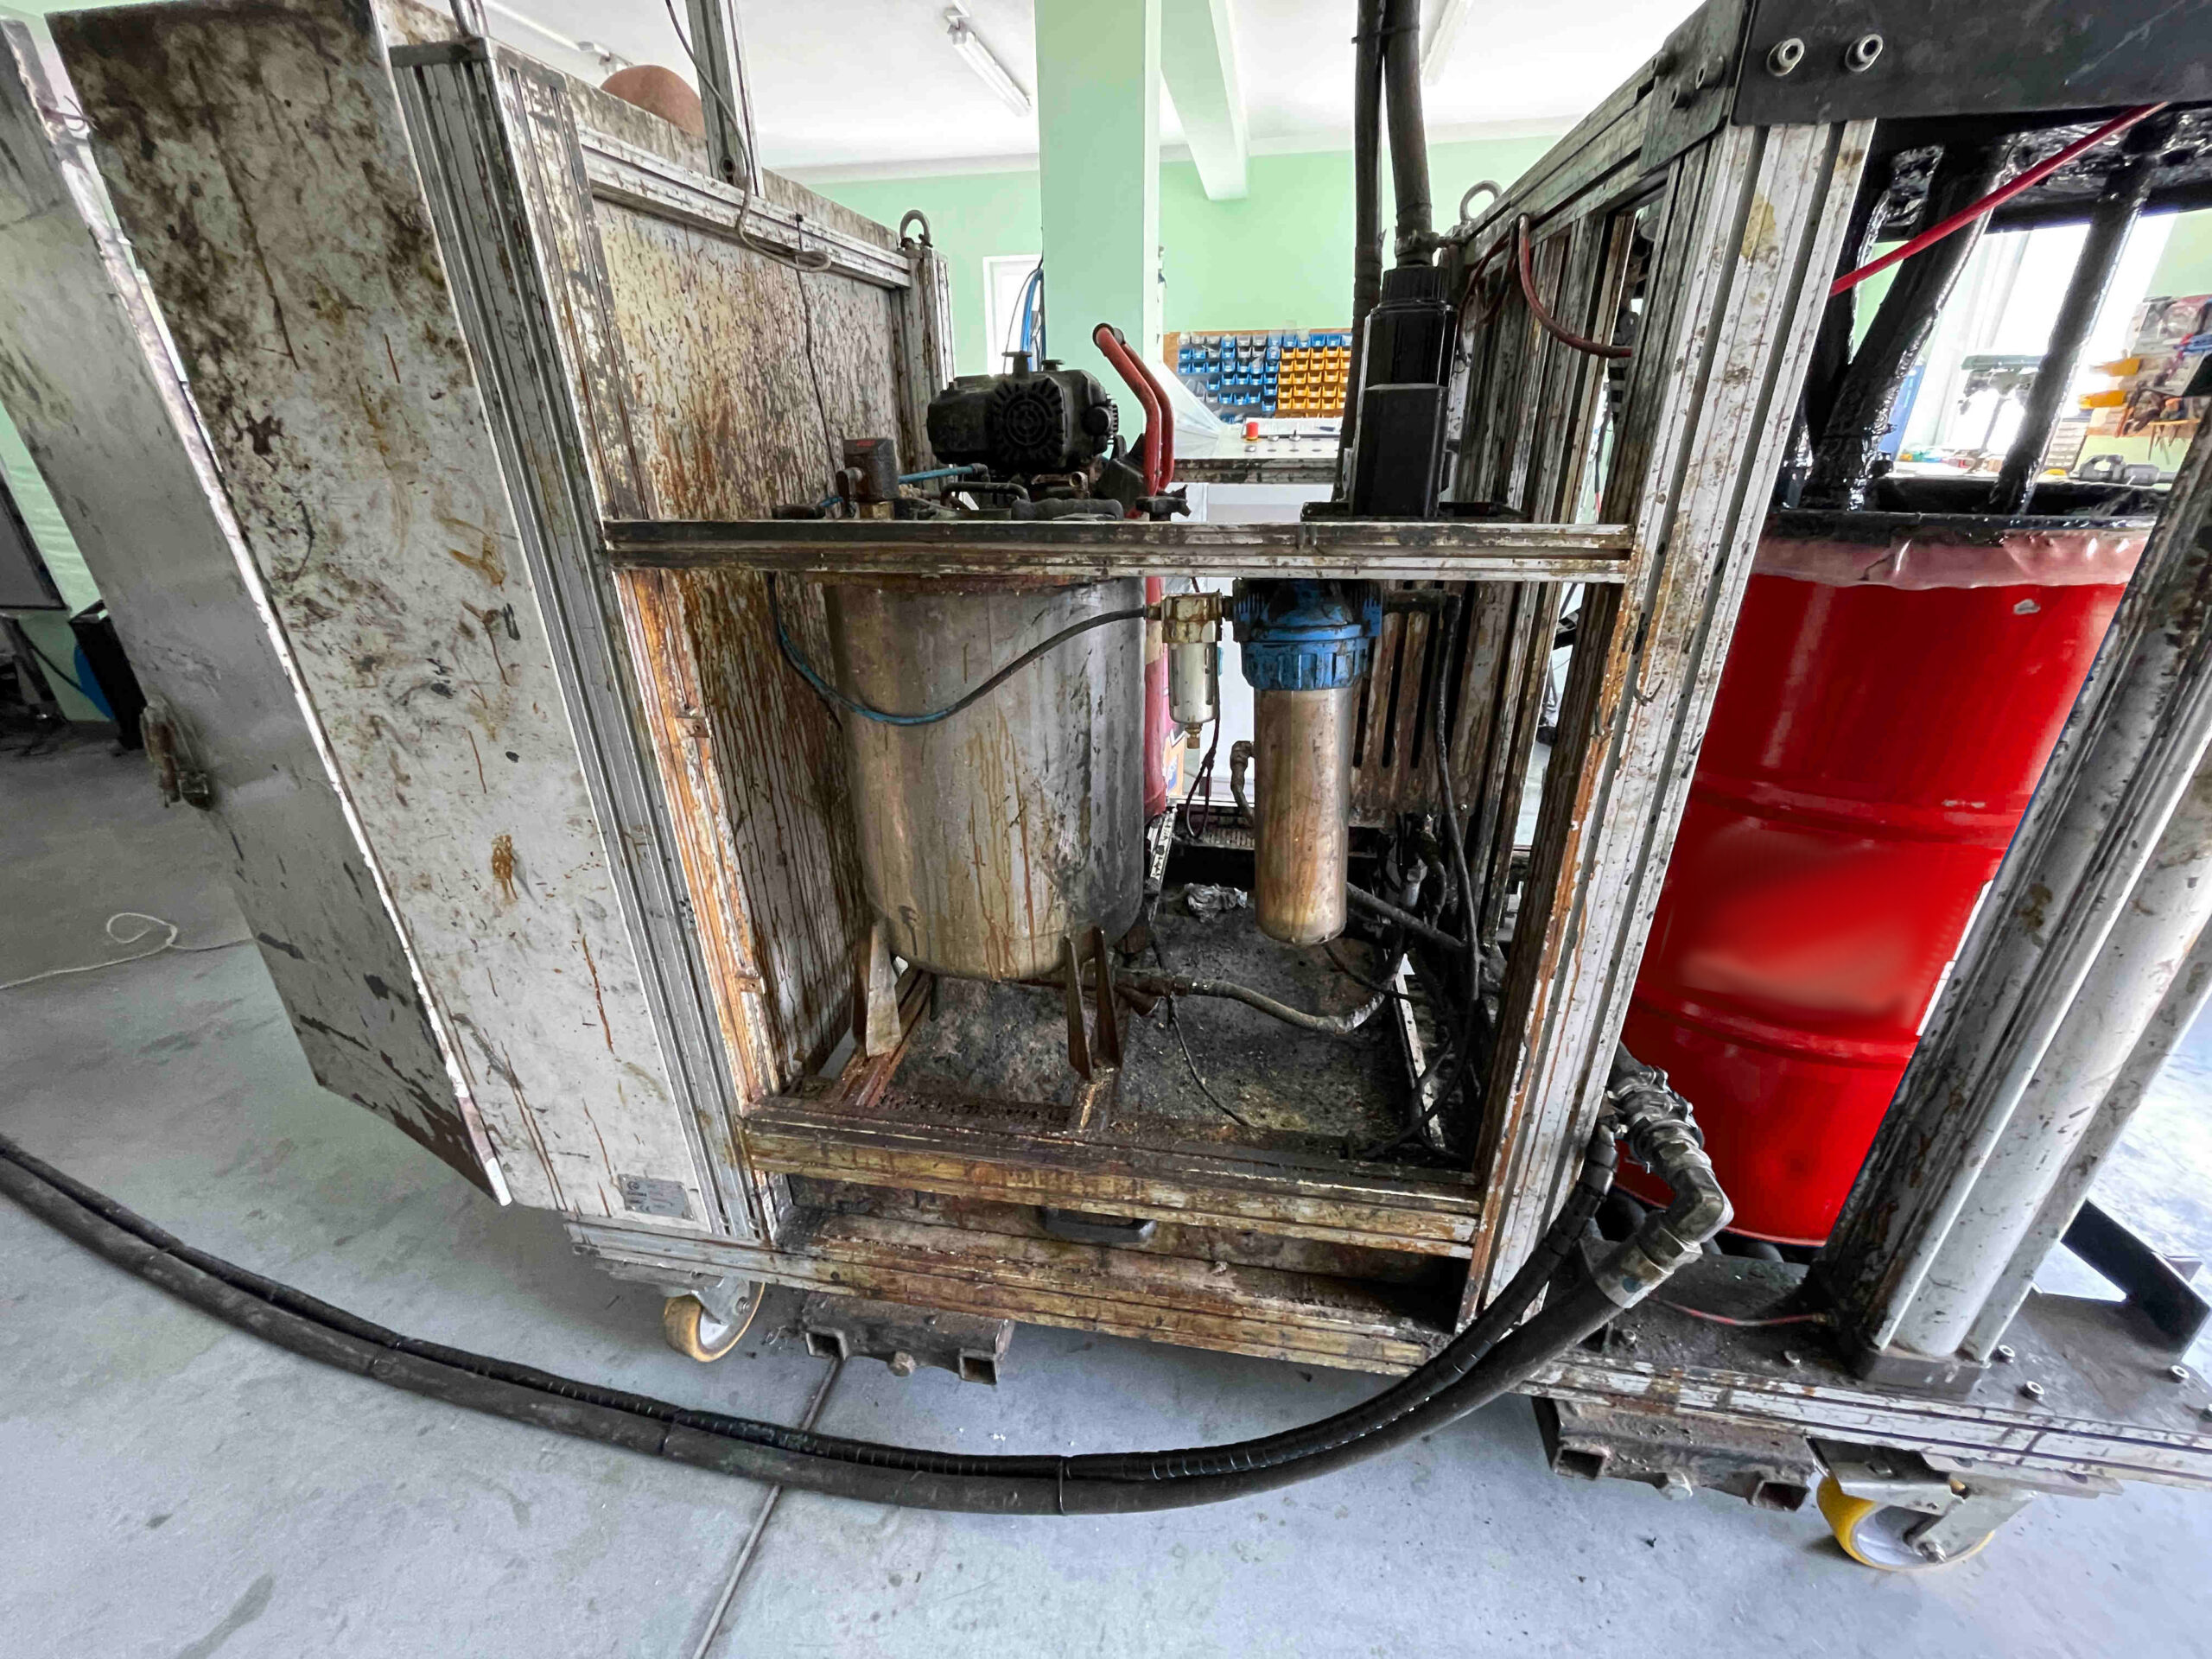 Zdjęcie maszyny heavyduty znajdującej się na hali serwisowej. Na zdjęciu widoczny jest przeznaczony do czyszczenia dozownik torowy. Po prawej stronie dozownika widoczna jest czerwona beczka z materiałem.